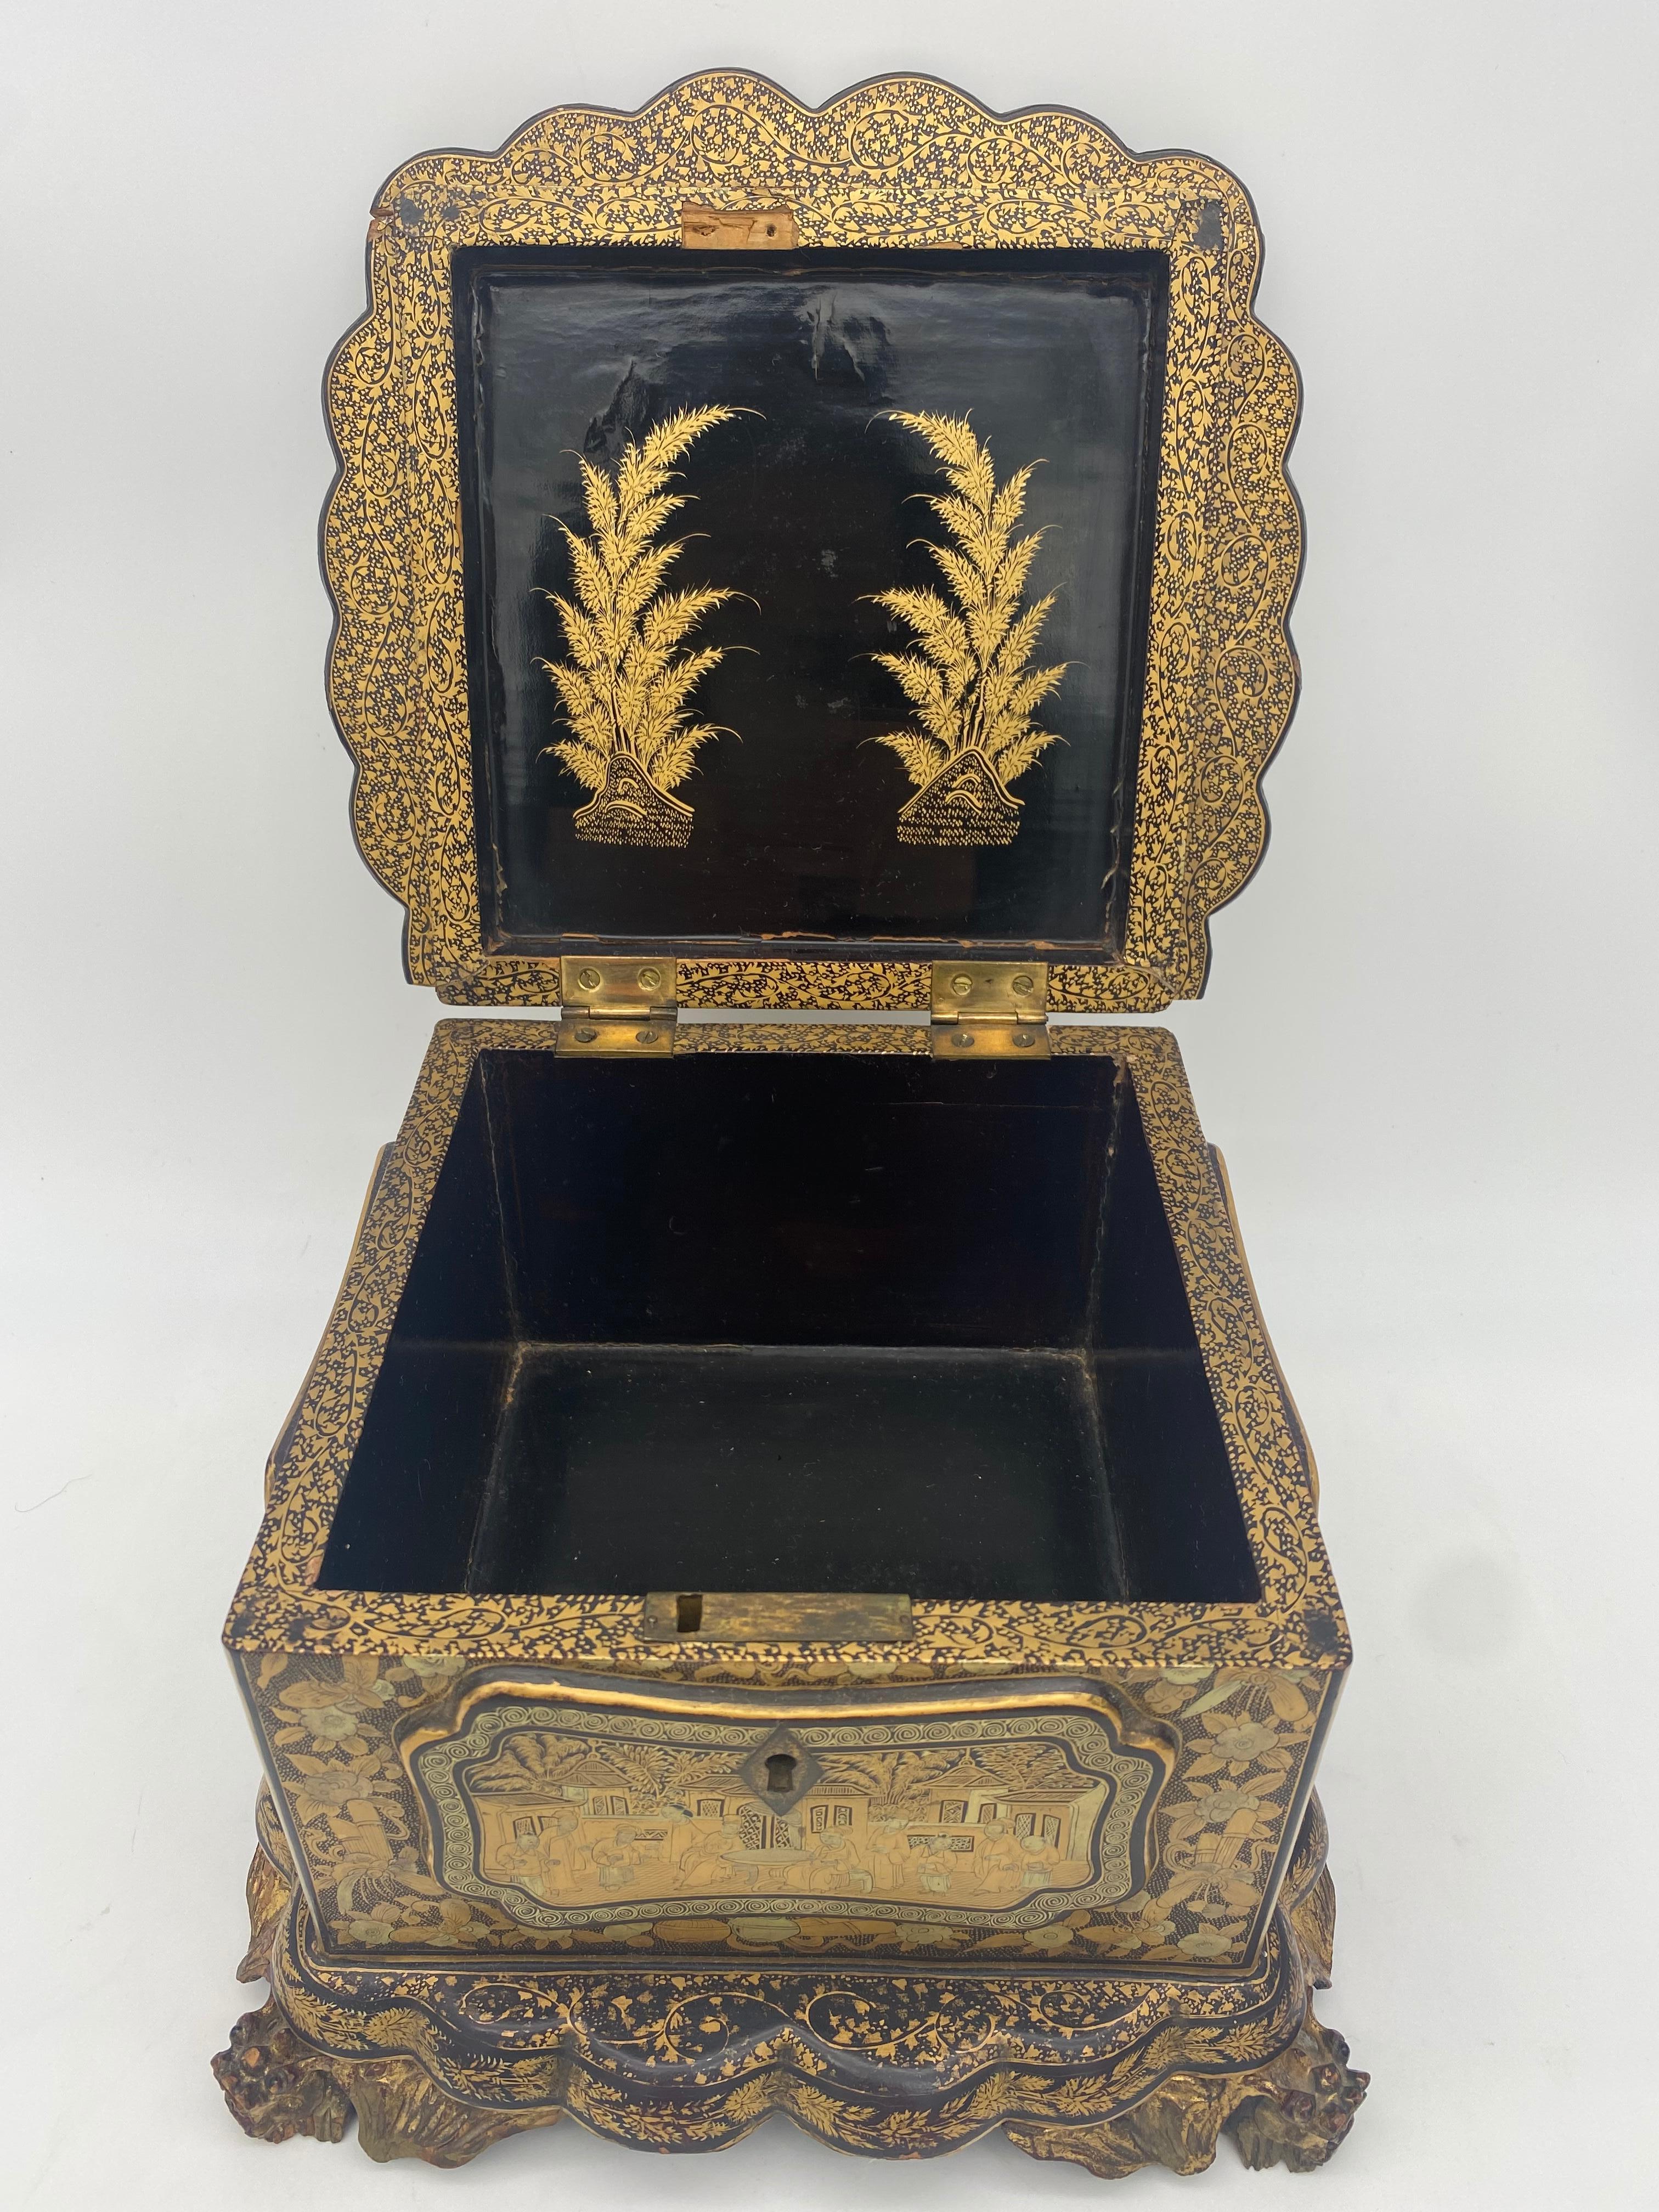 Einzigartige 19. Jahrhundert Export chinesischen vergoldeten Chinoiserie Lackkasten mit handgemalten Szenen vergoldet Export schwarzem Lack, hat diese Box eine einzigartige Form, ist es mit einem gewellten Rand um den Deckel und den Boden fußte. Der